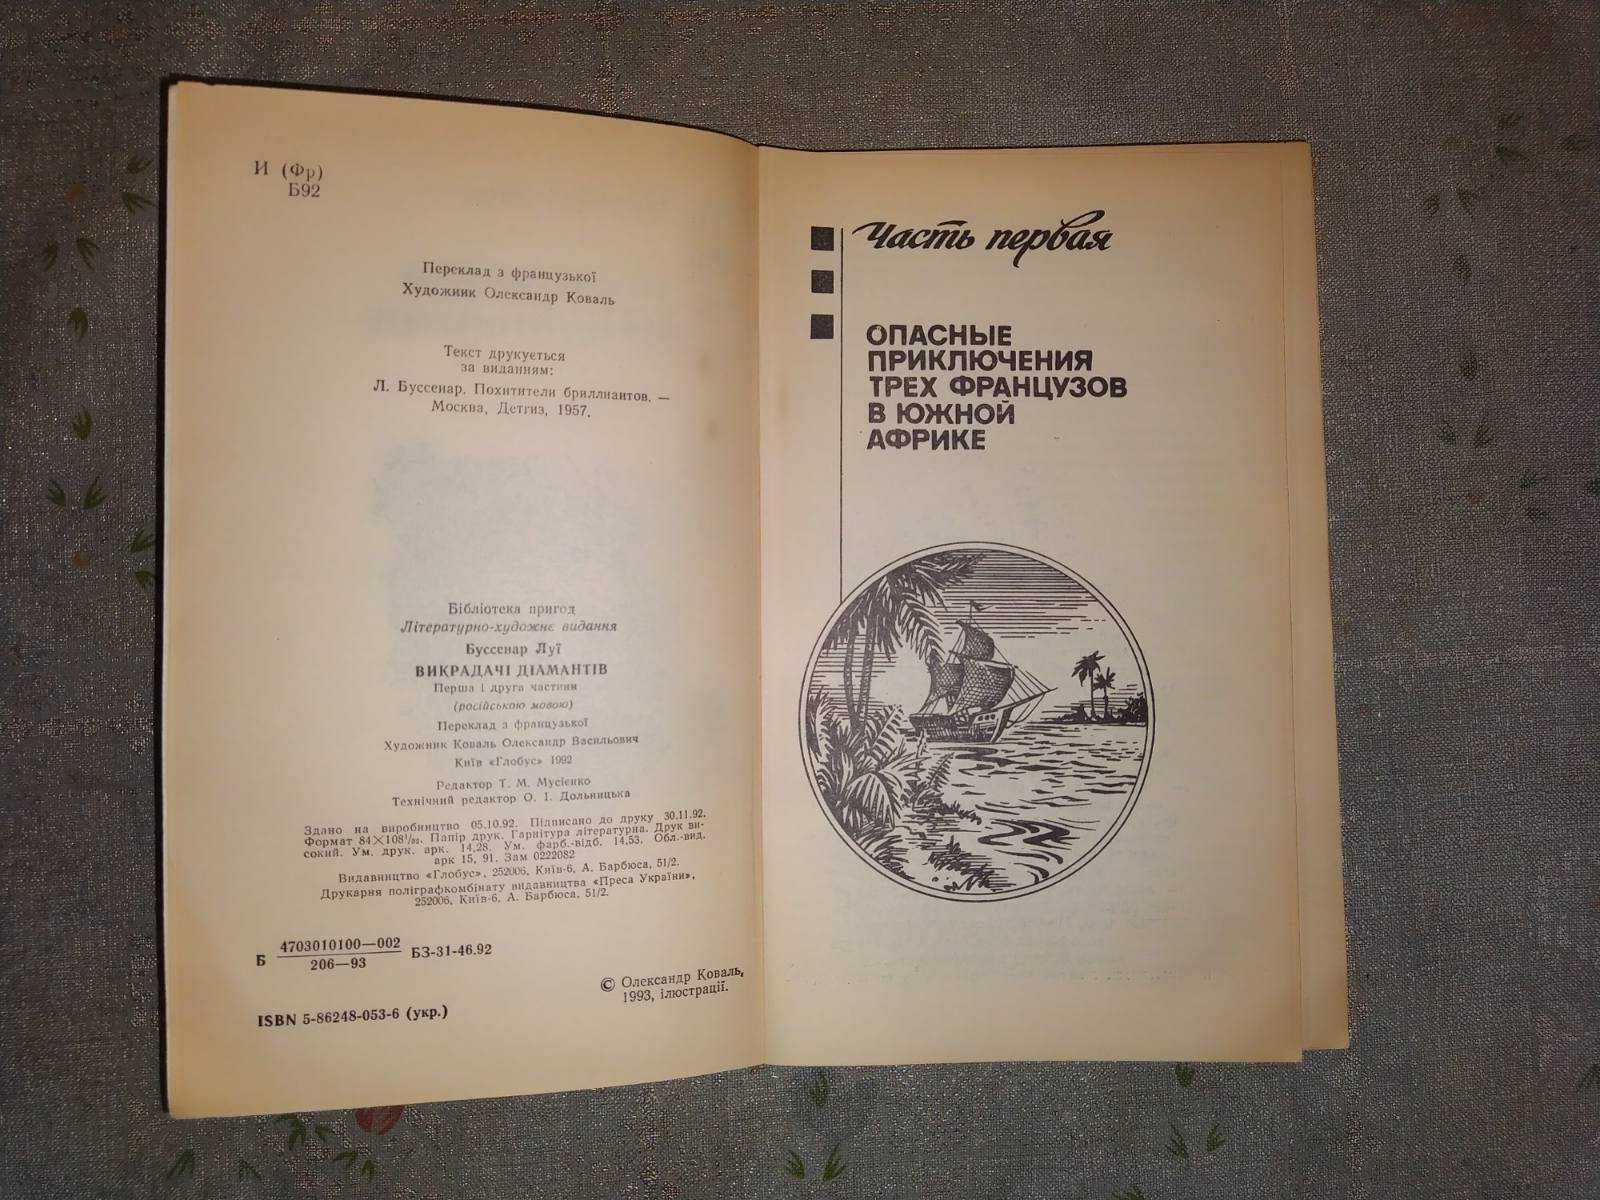 Книга Похитители бриллиантов, 2 тома, Луи Буссенар